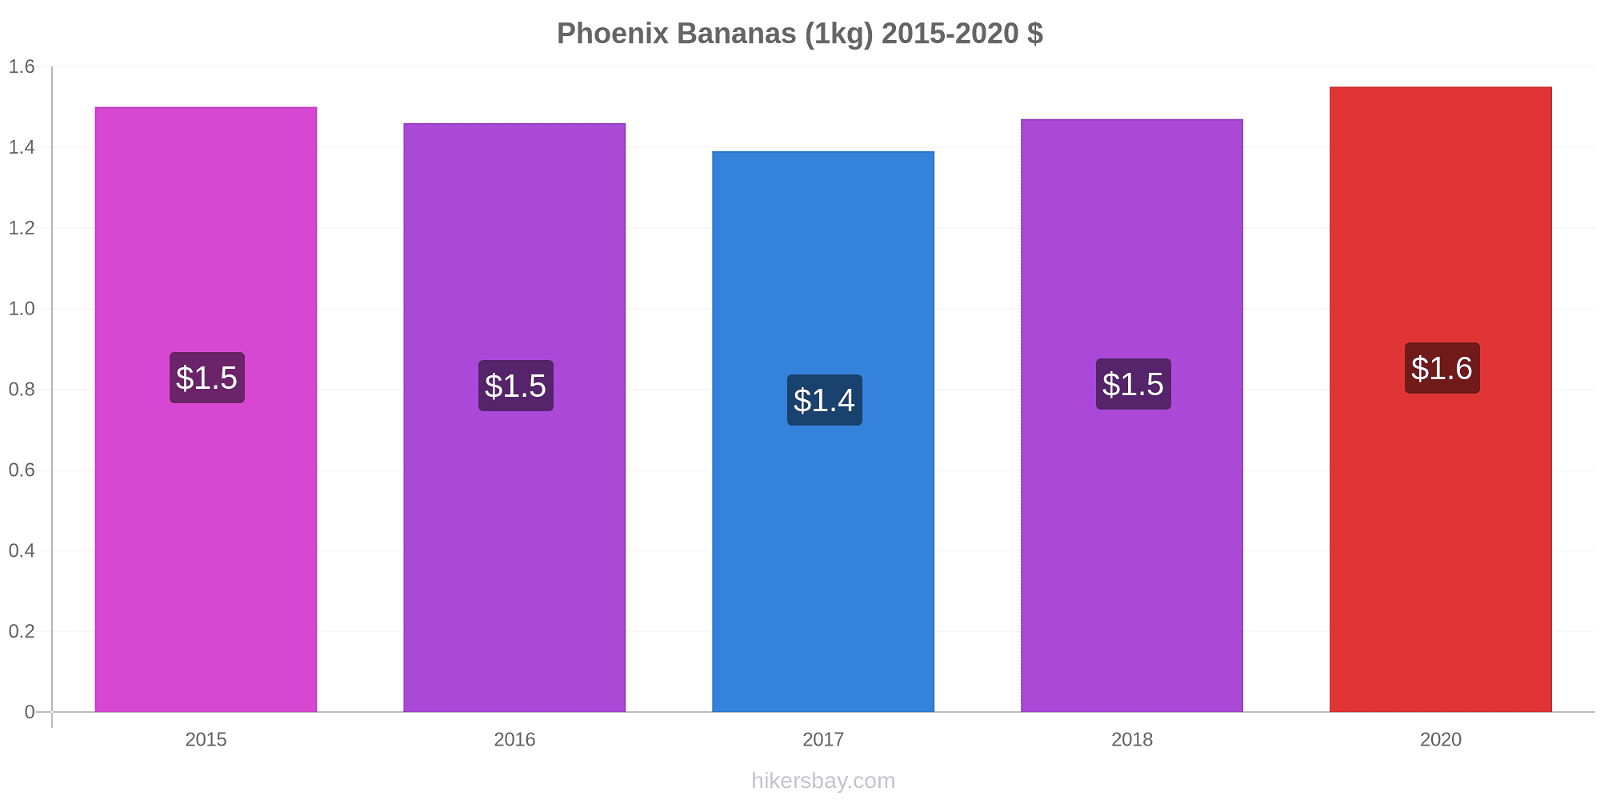 Phoenix price changes Bananas (1kg) hikersbay.com